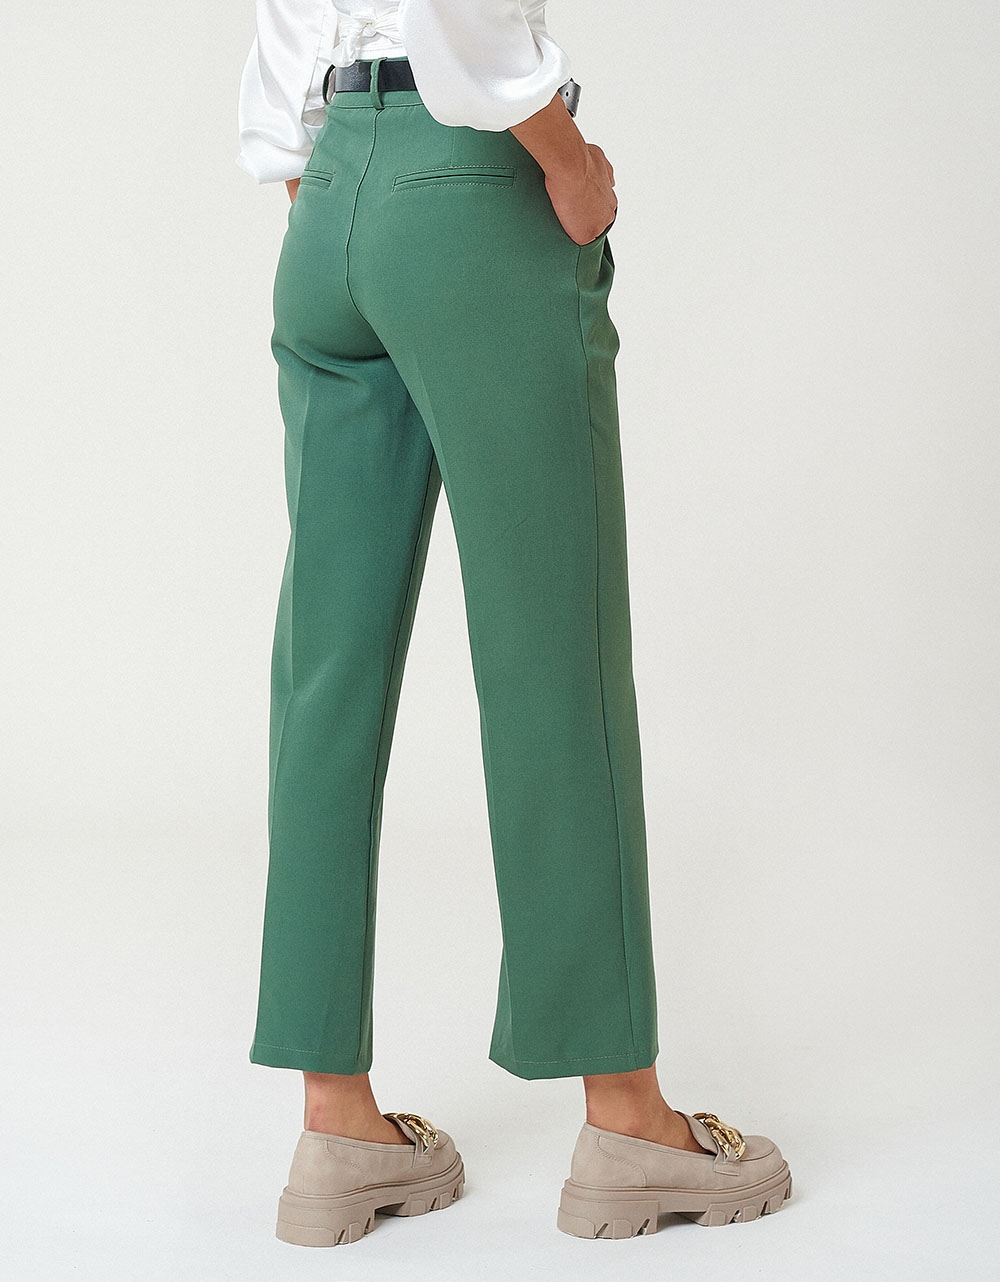 Εικόνα από Γυναικείο παντελόνι υφασμάτινο cropped με πιέτες Πράσινο